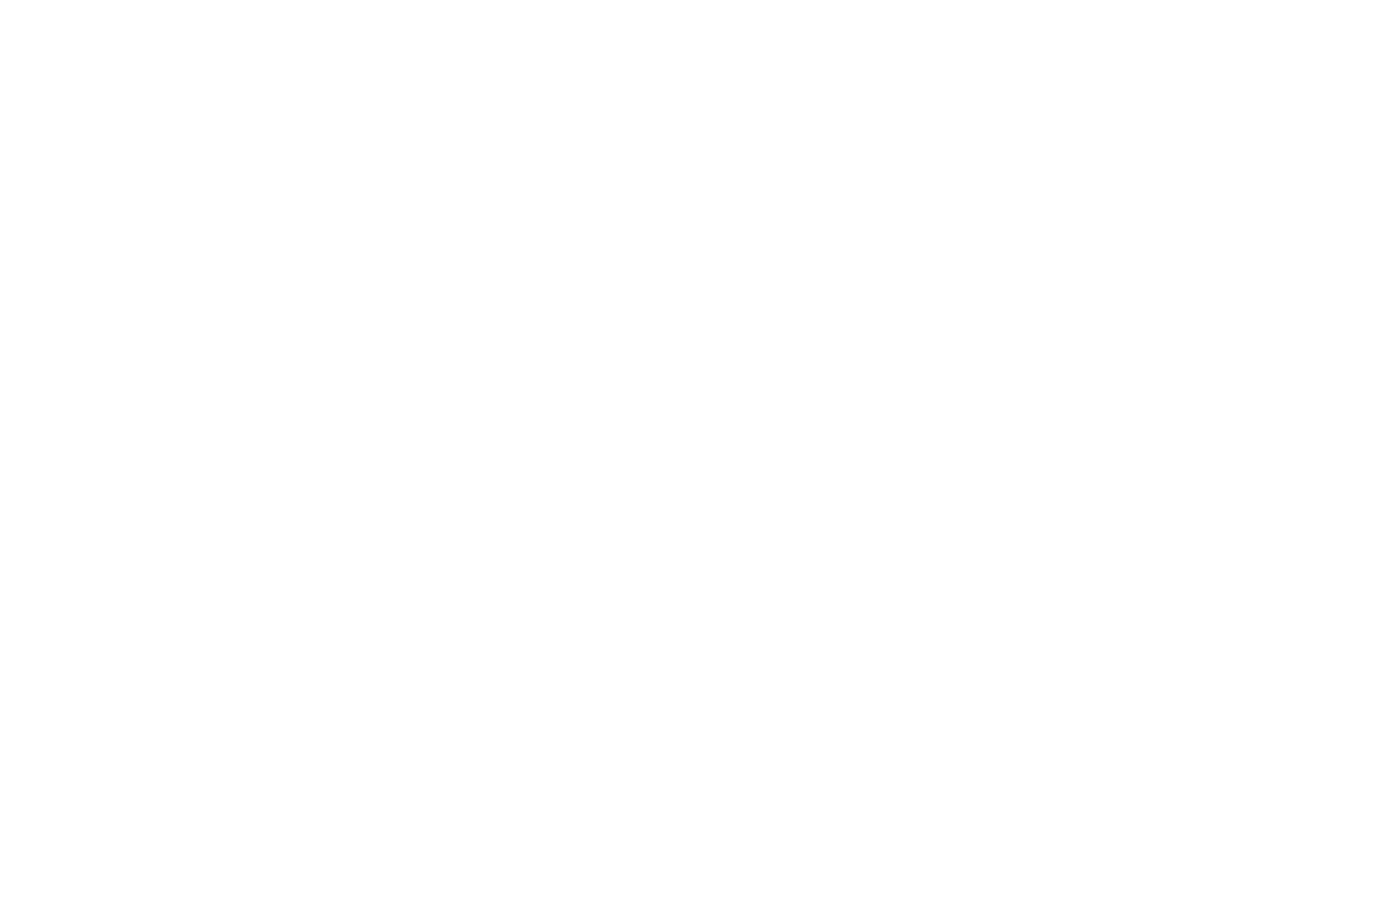 Кейс сервиса BRANDNATION - Дизайн упаковки фармацевтических продуктов. Брендинговое агентство BRANDNATION в Москве и Санкт-Петербурге. Услуги: разработка логотипа и фирменного стиля, дизайн упаковки, брендбук, ребрендинг, разработка сайта.